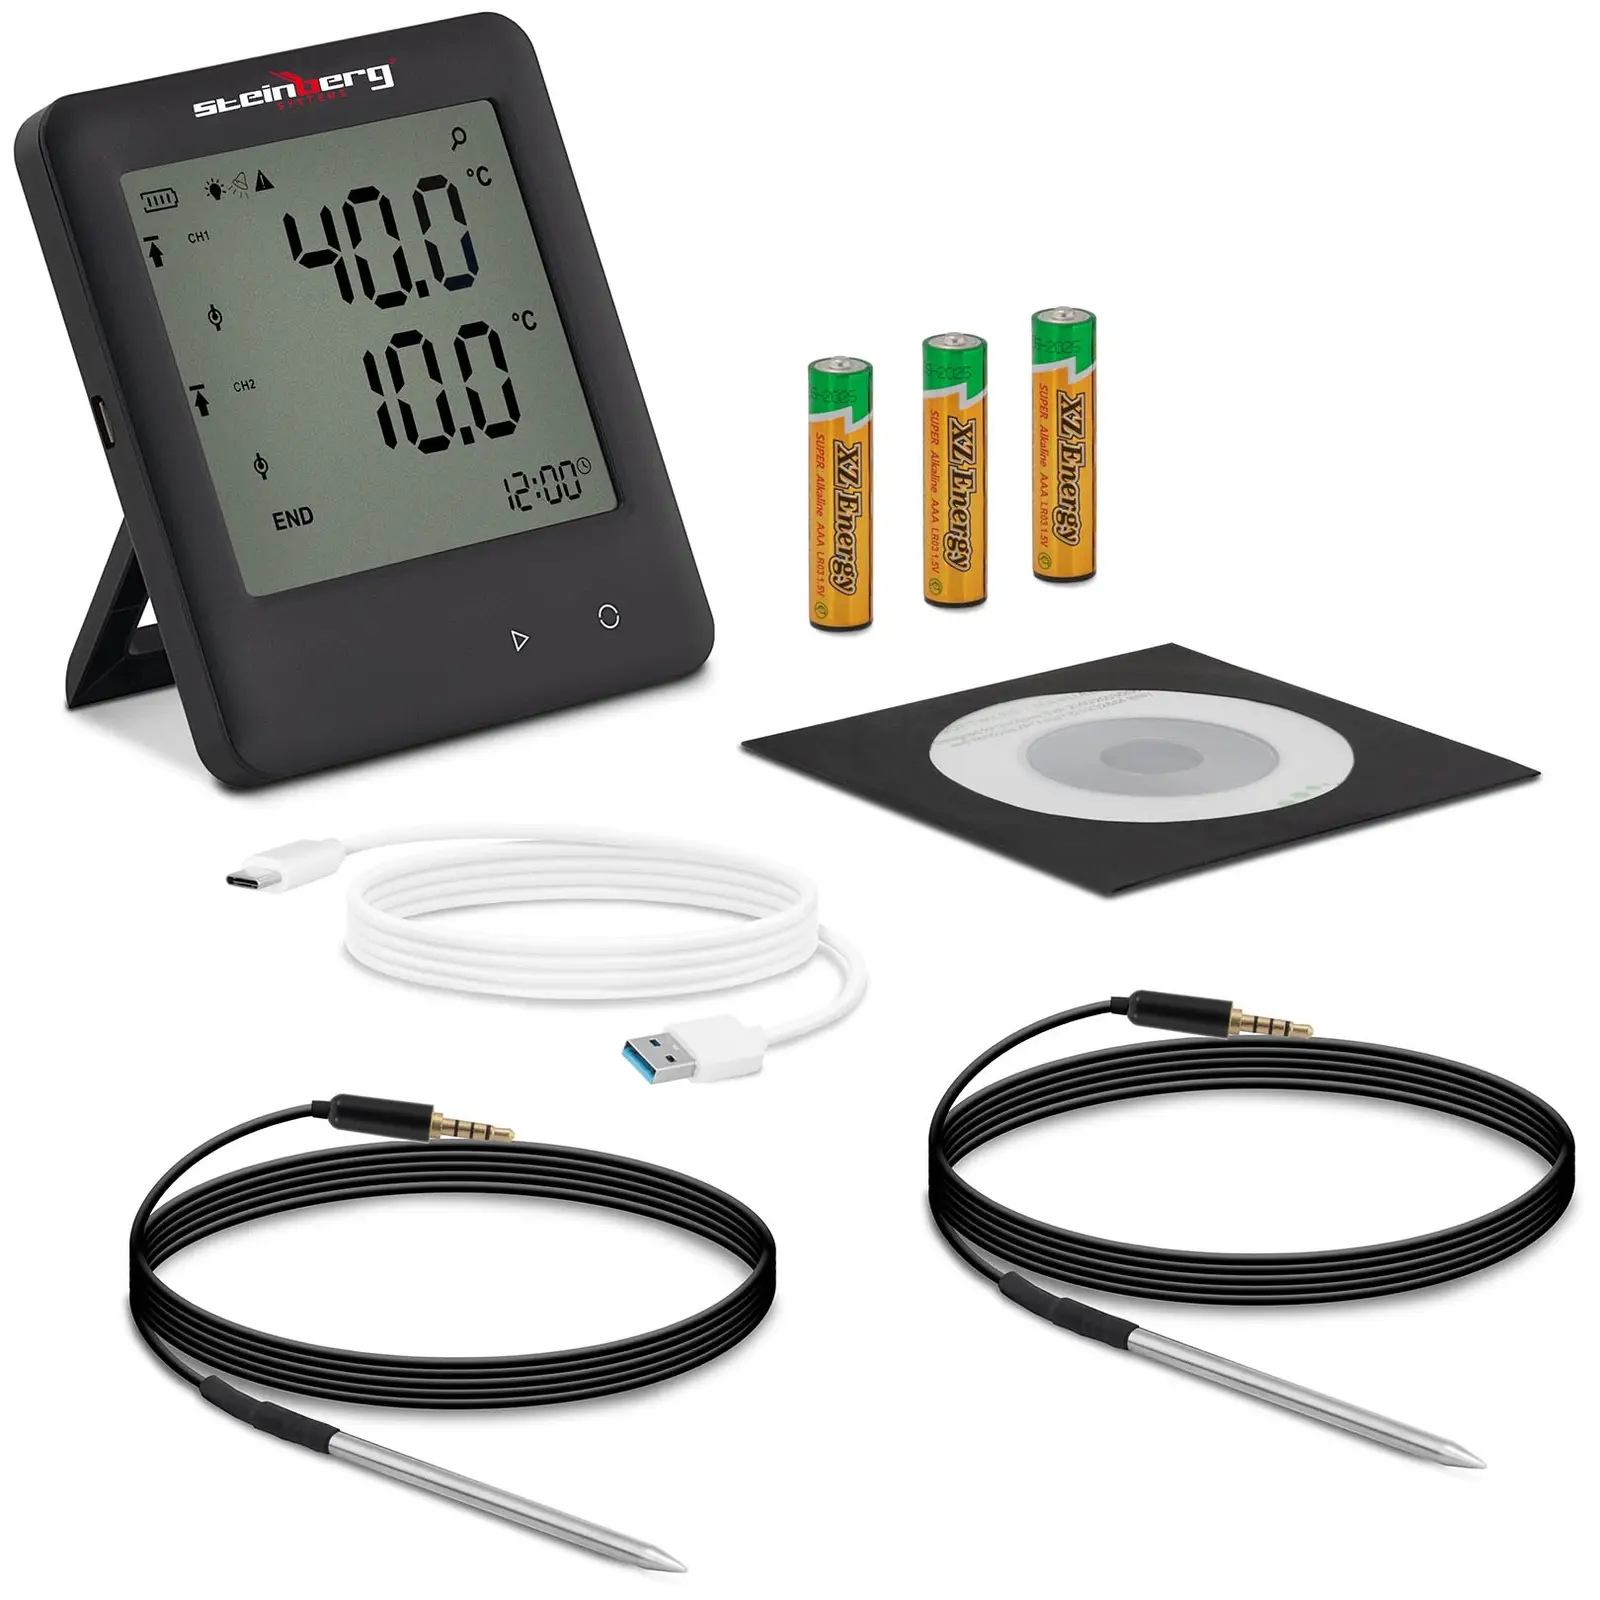 Datalogger teploty - LCD - teplota - 200 až +250 ° C - 2 externí čidla